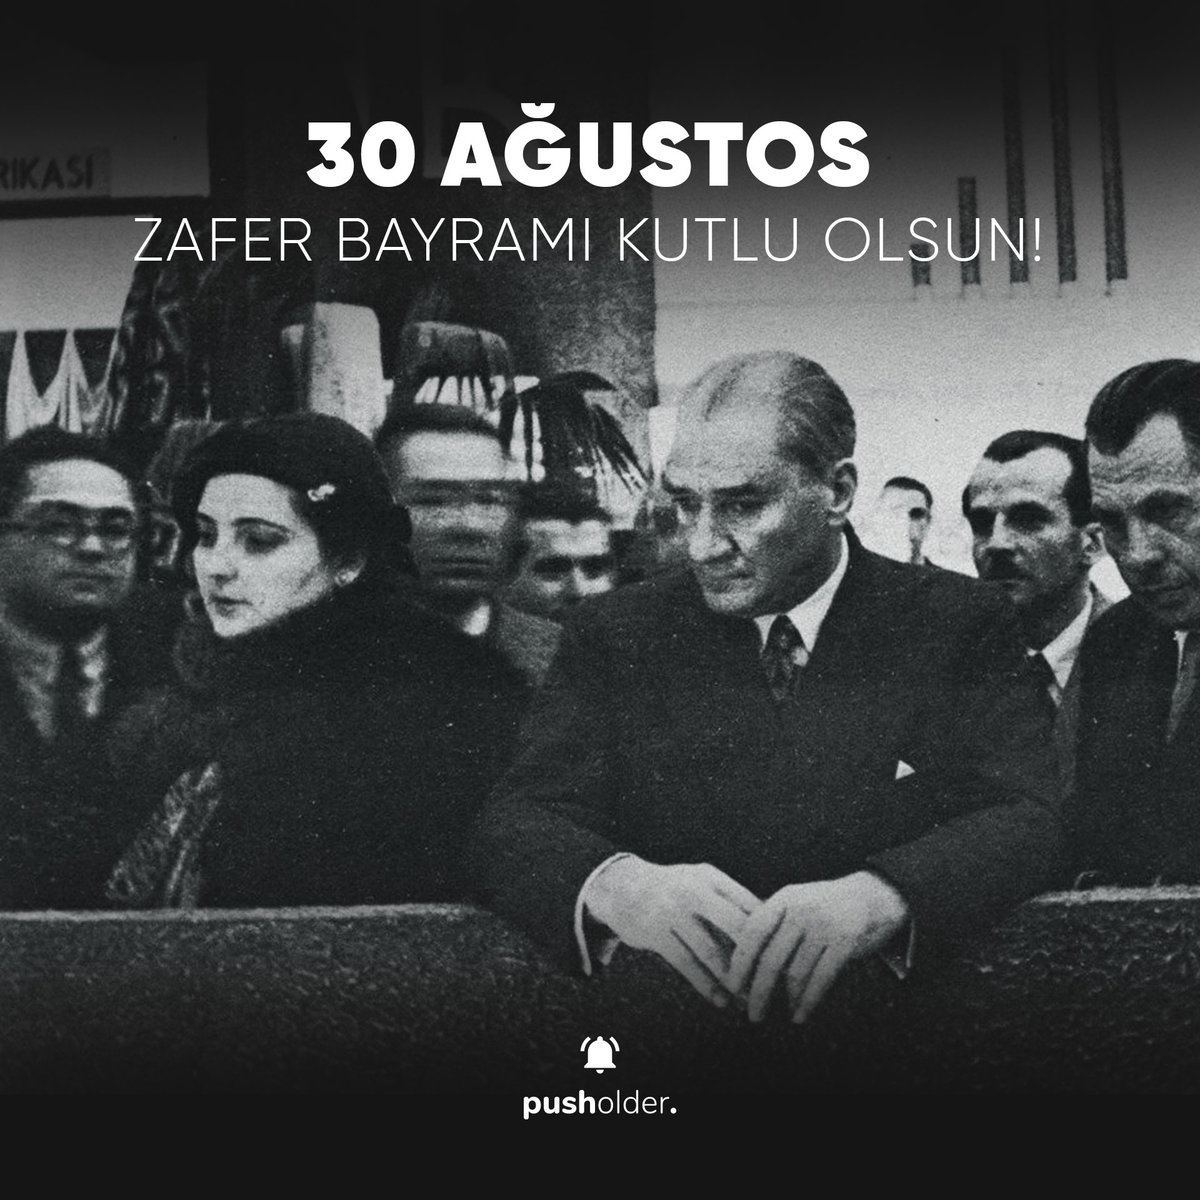 'Büyük zaferler, yalnızca büyük milletler tarafından kazanılabilir.' - Mustafa Kemal Atatürk